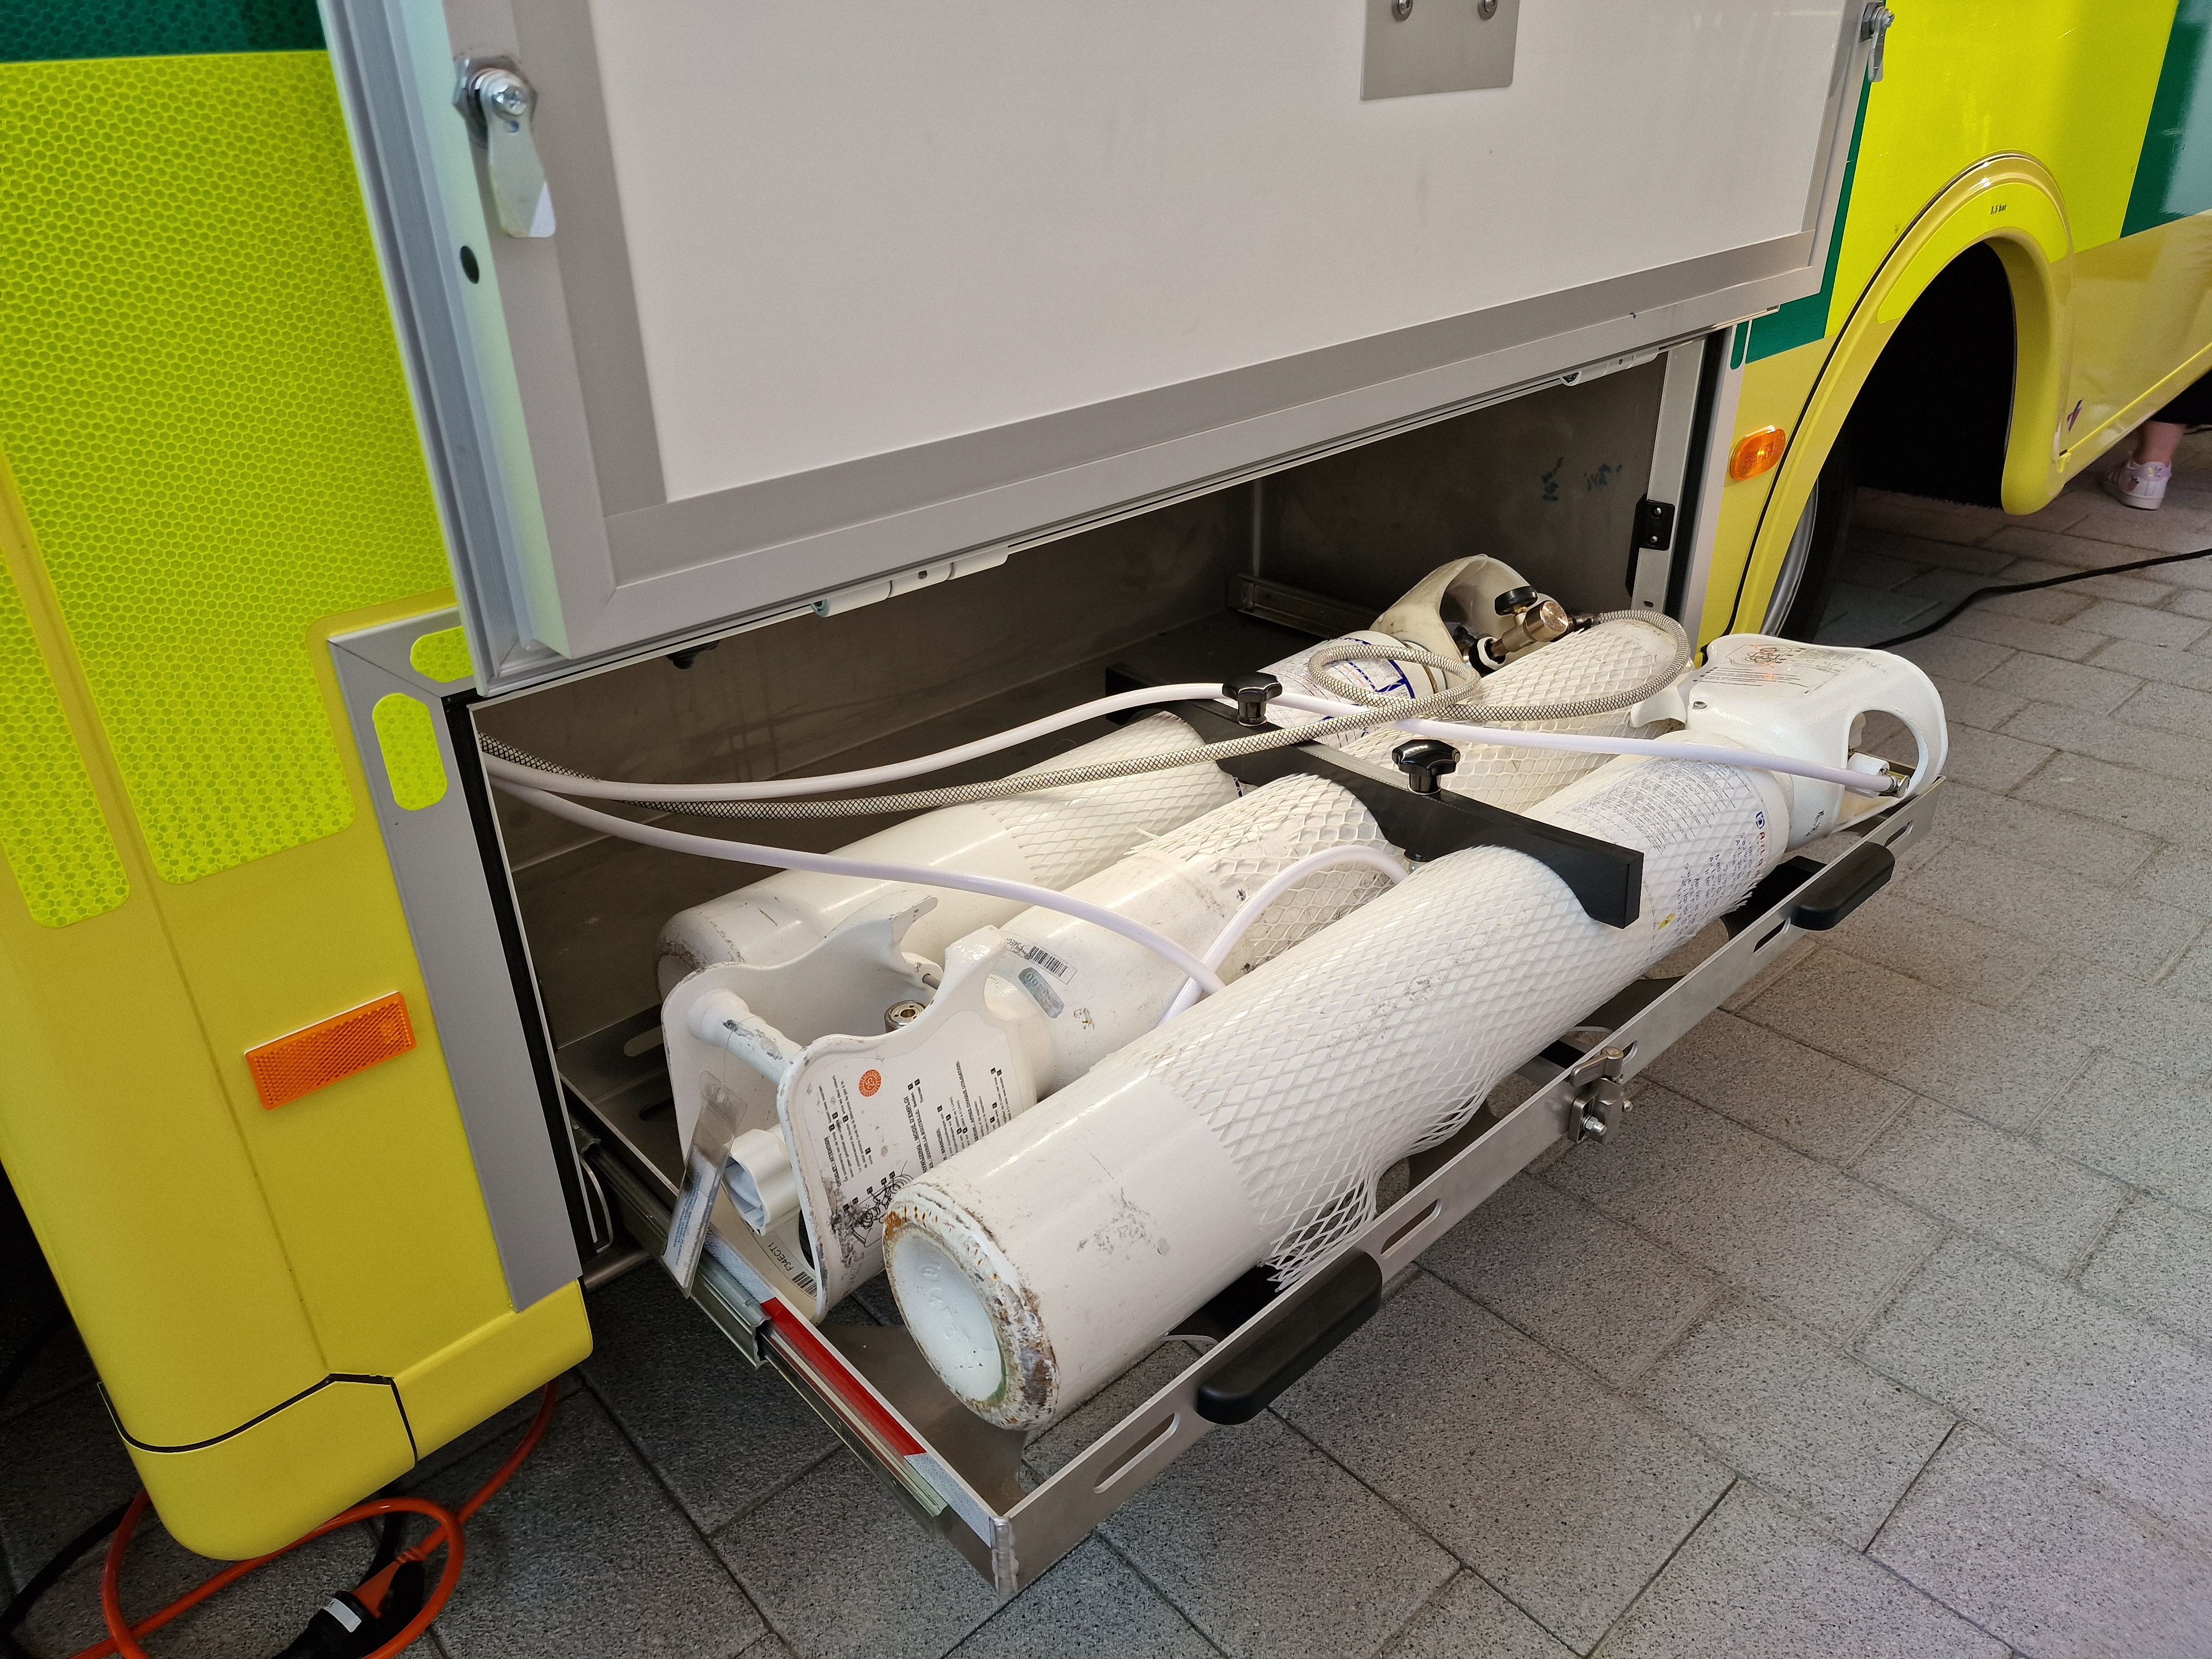 Nouvelle ambulance haute technologie pour l’UZ Brussel  Aft4